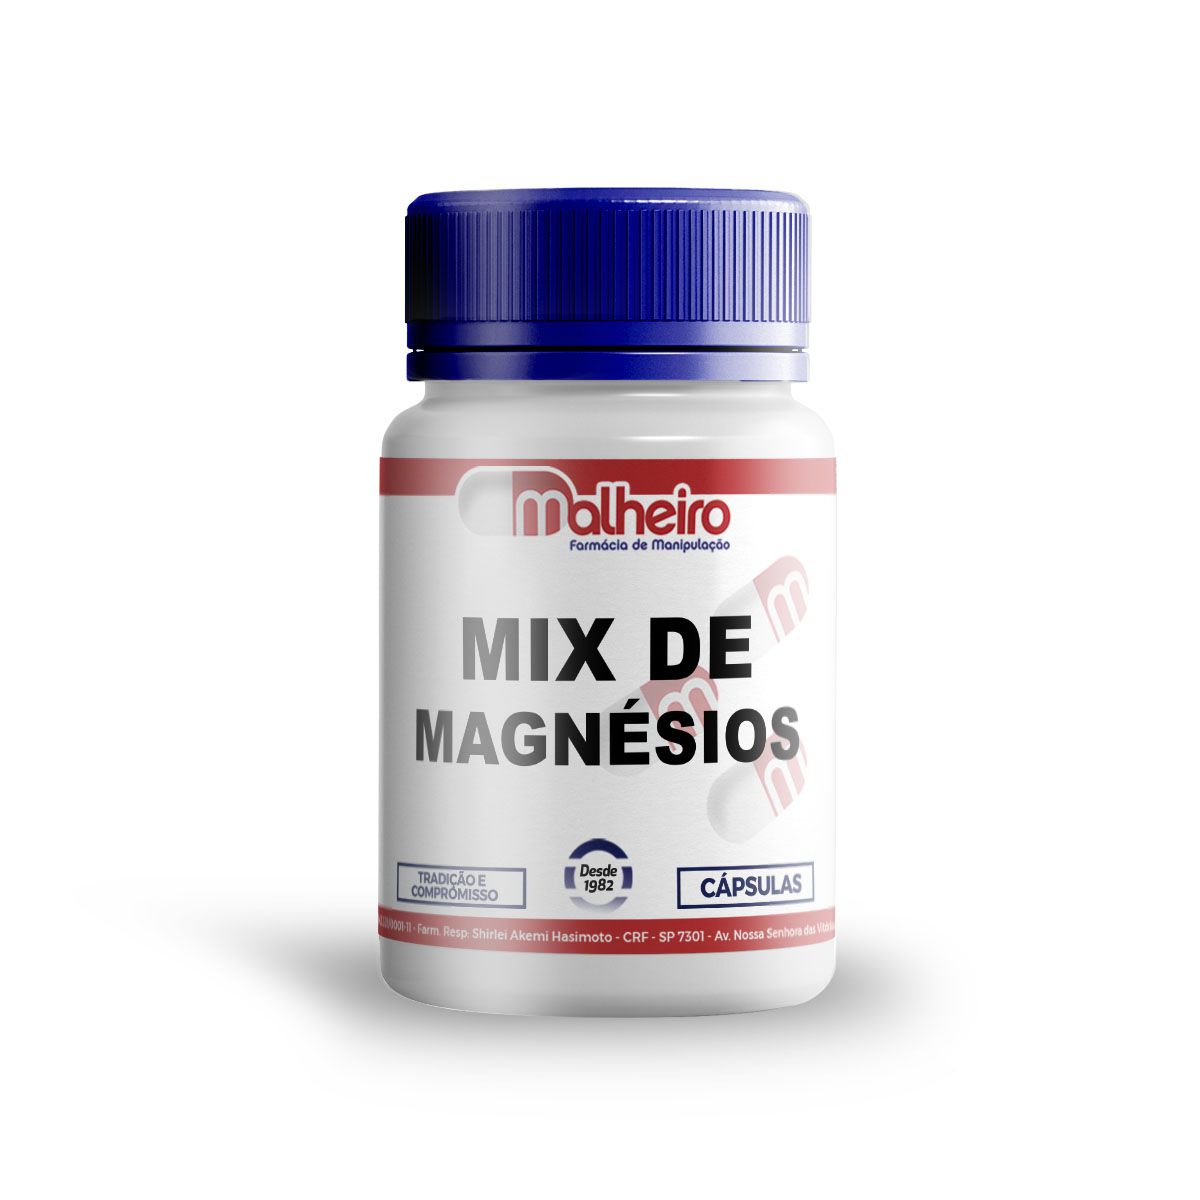 Mix de Magnésio (Treonato + Dimalato + Quelado) cápsulas - Farmacia  Malheiro | Farmacia de Manipulação - Suplementos